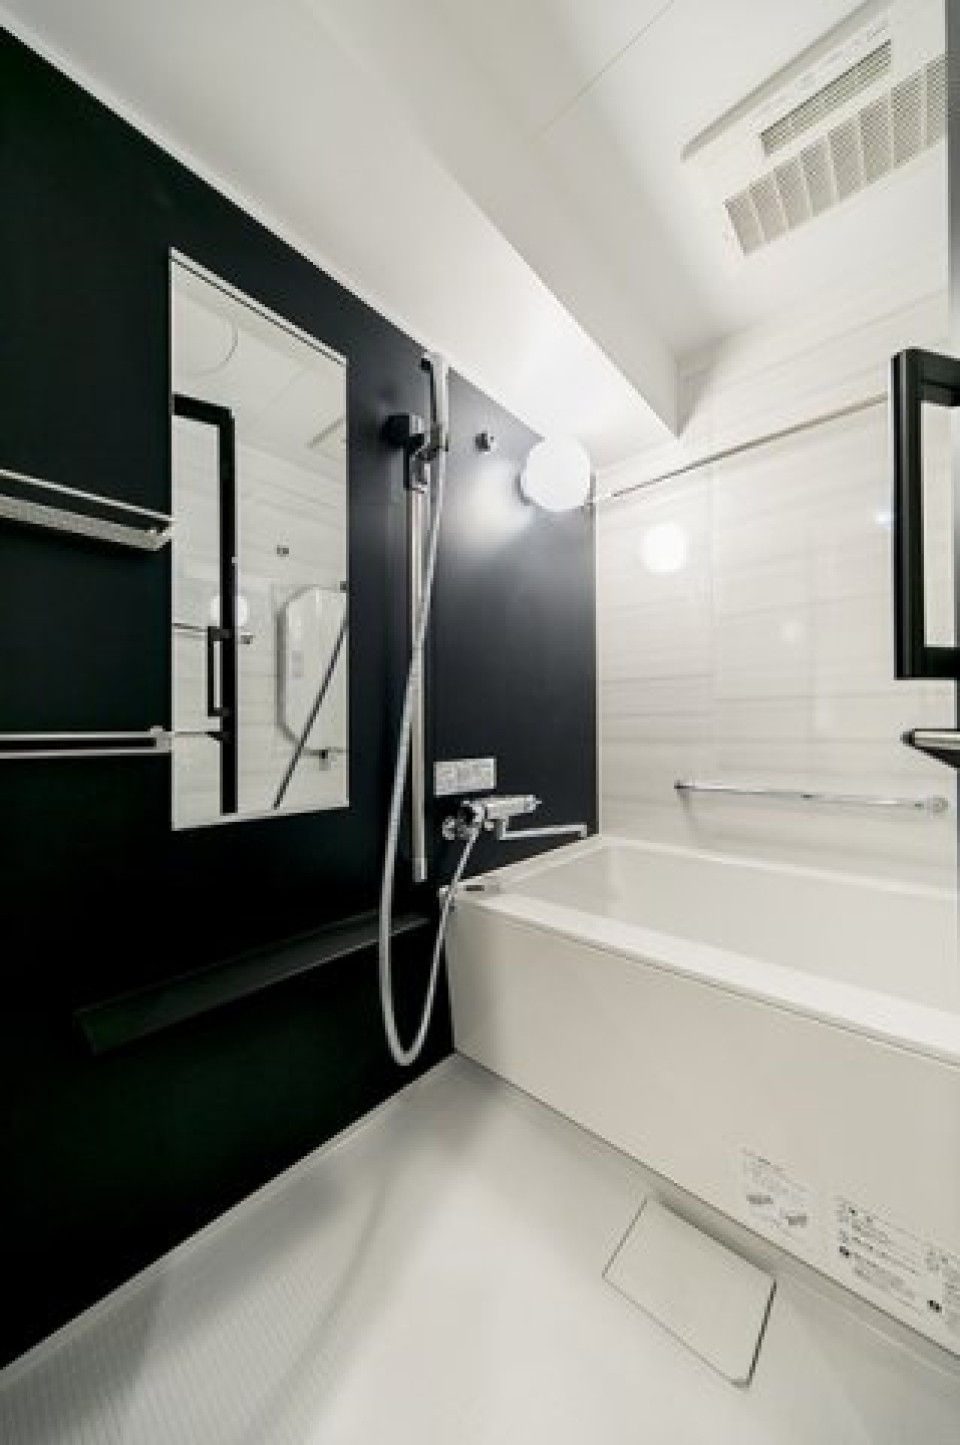 ダークなパネルが導入された浴室。※写真は同タイプ住戸です。